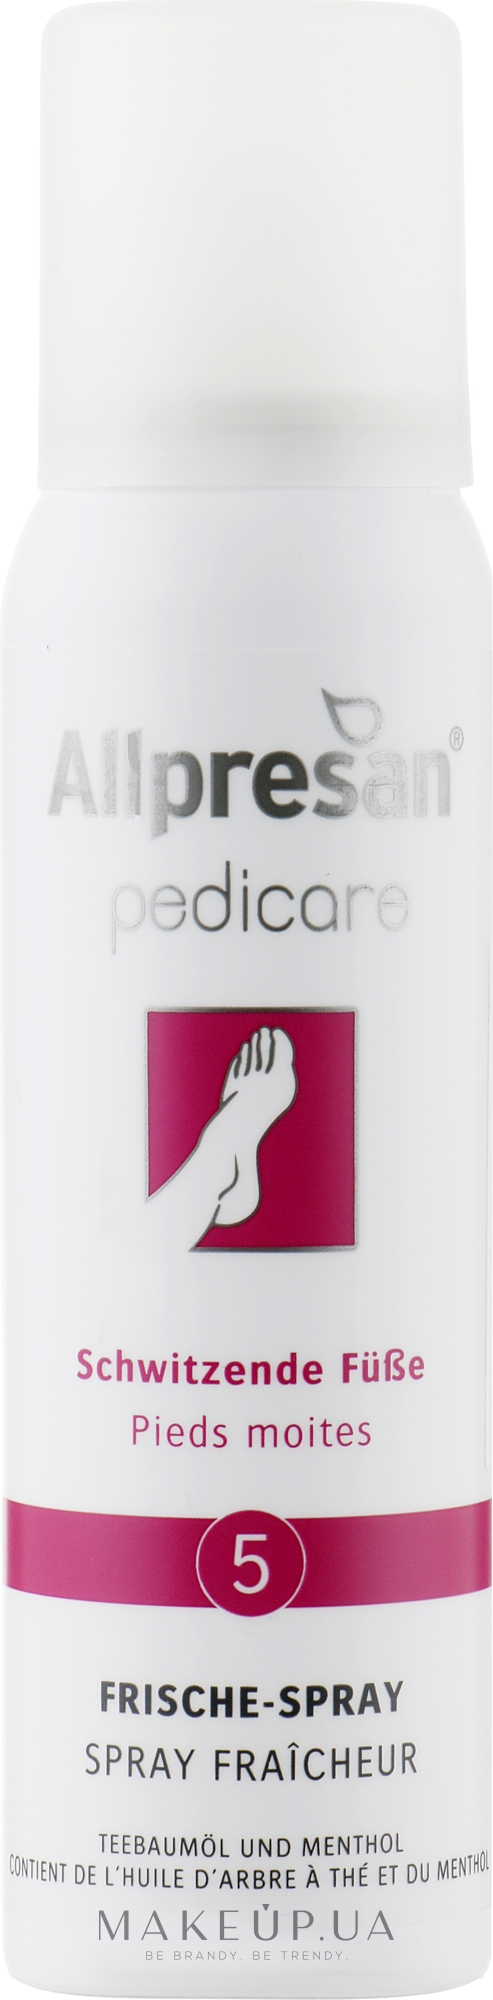 Освіжаючий спрей-дезодорант для стоп - Allpresan Foot Special 5 Frische-Spray — фото 100ml